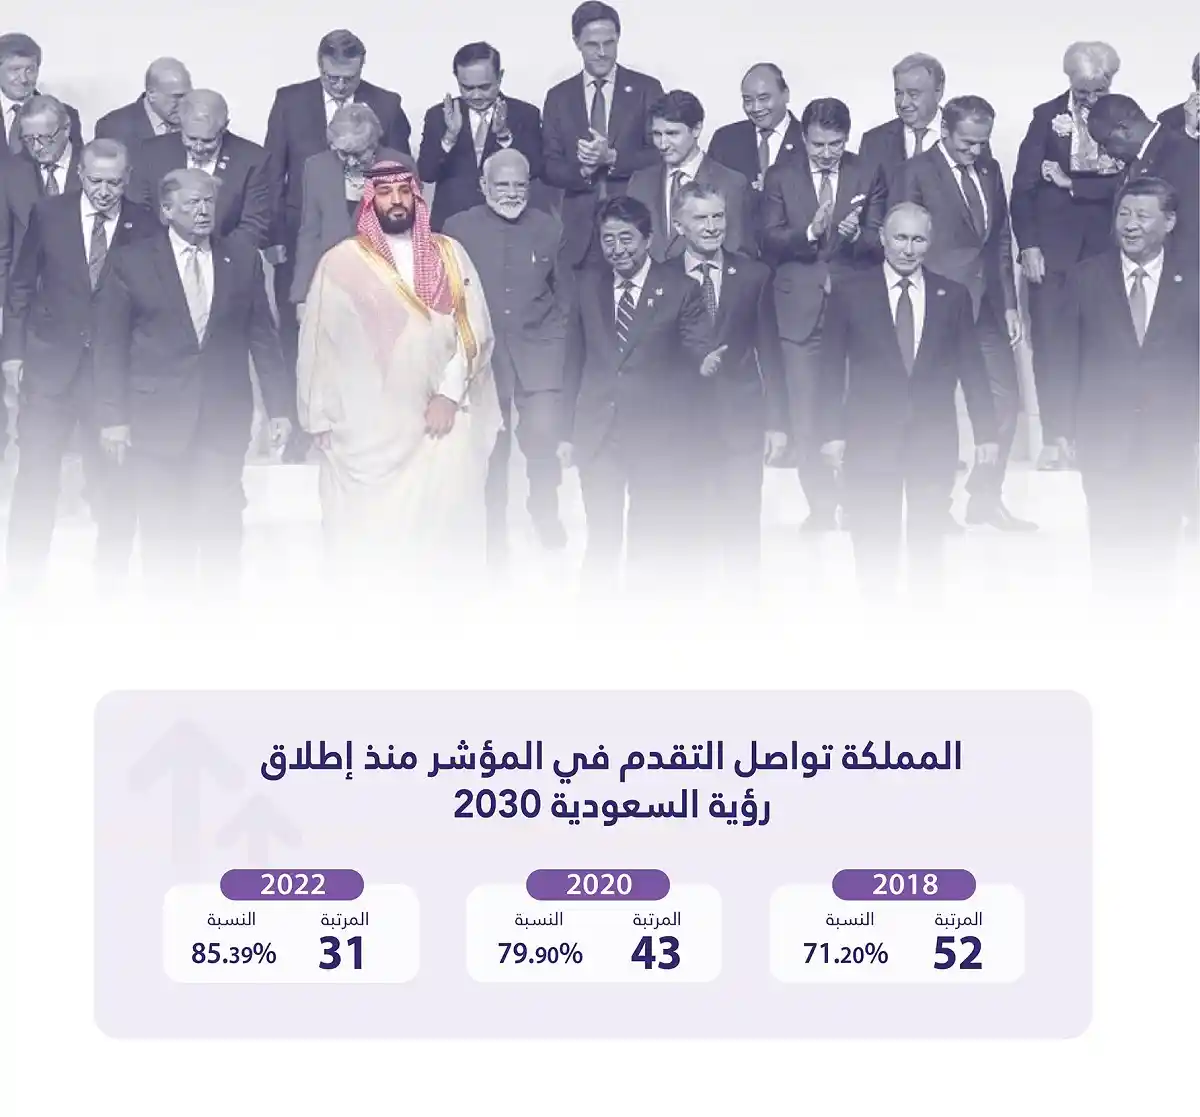 السعودية افضل دولة في مجموعة العشرين في مؤشر الخدمات الإلكترونية